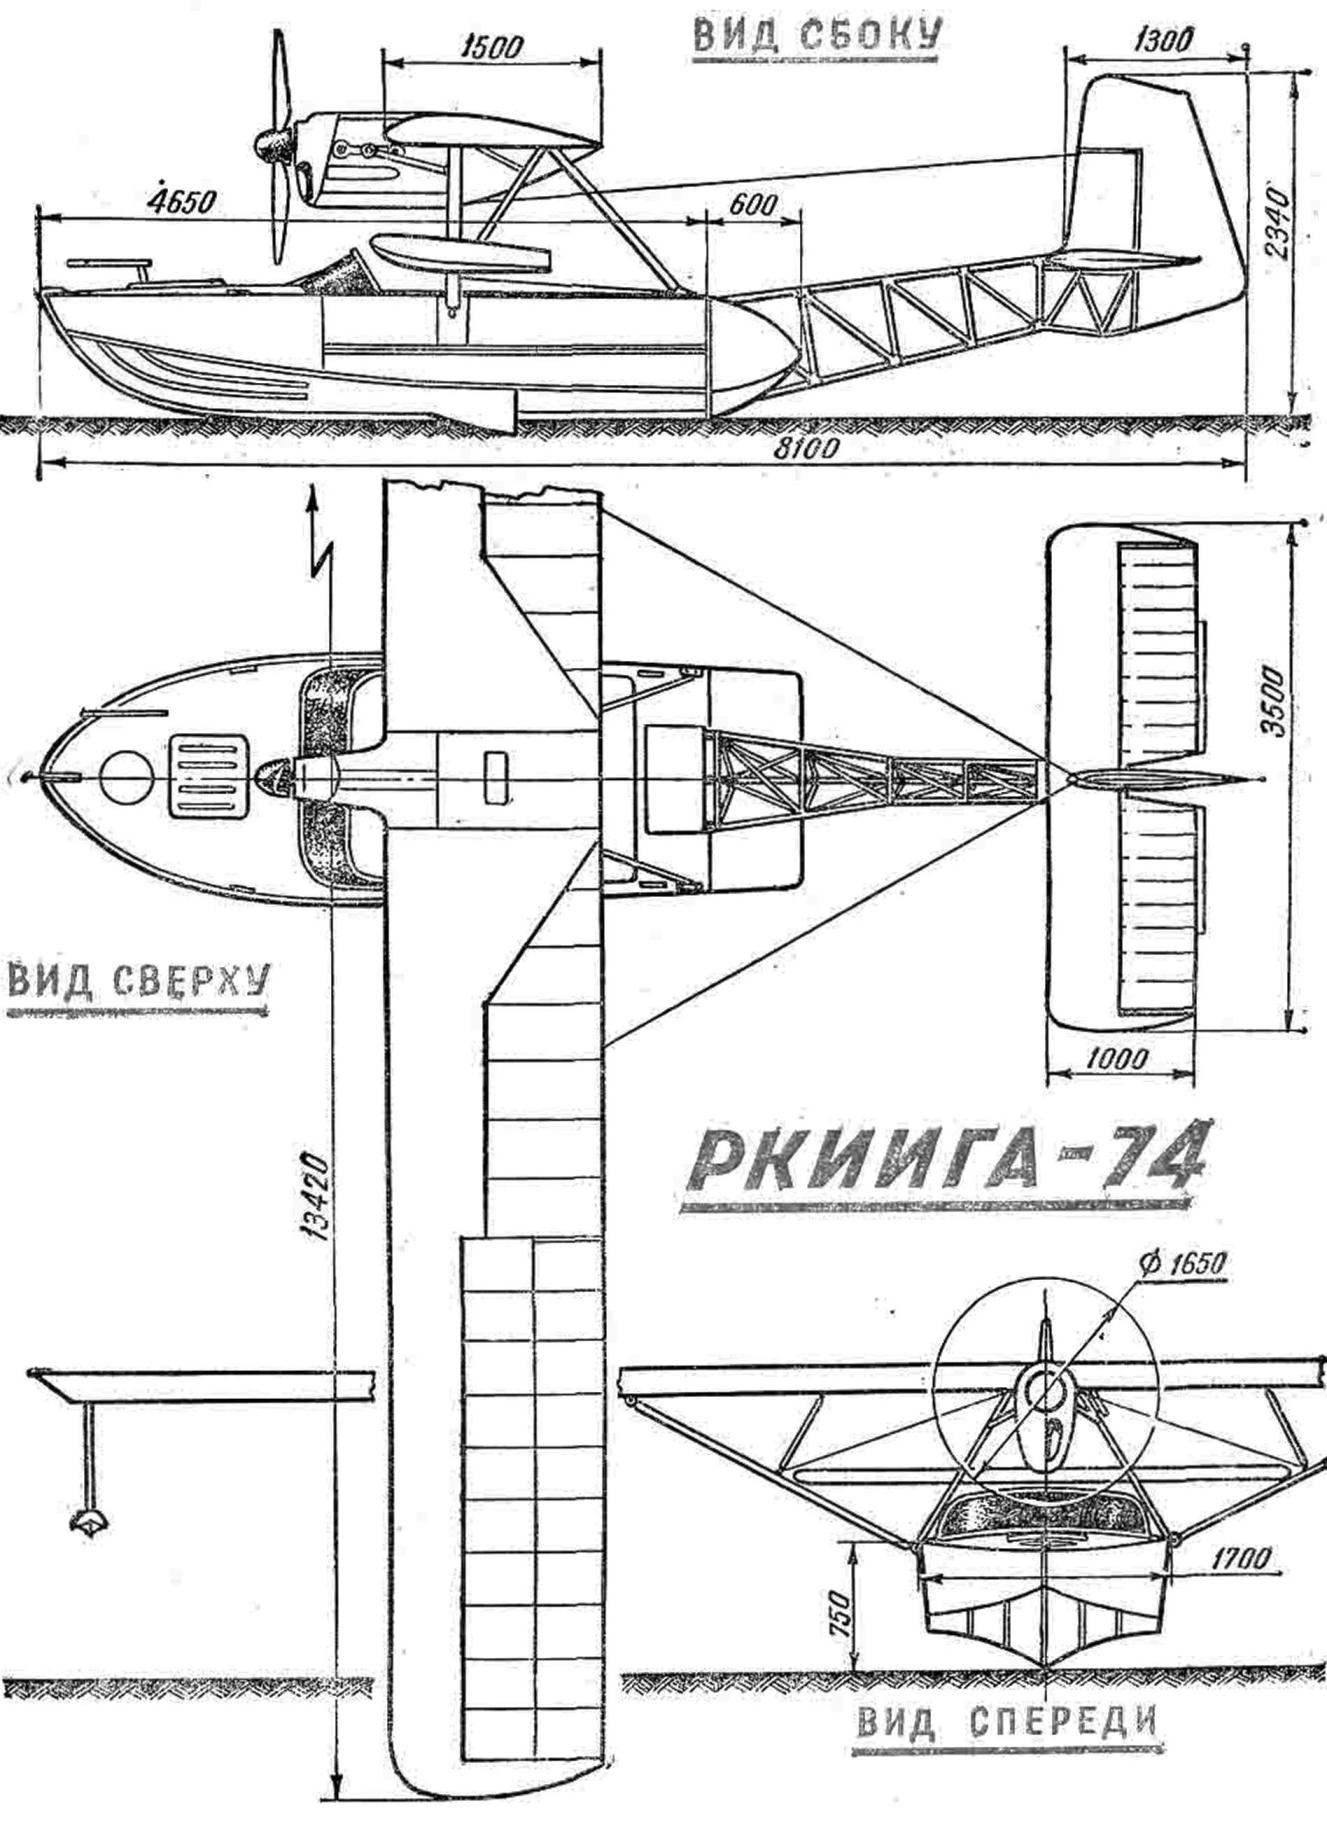 Рис. 2. Схема в трех проекциях гидросамолета РКИИГА-74.